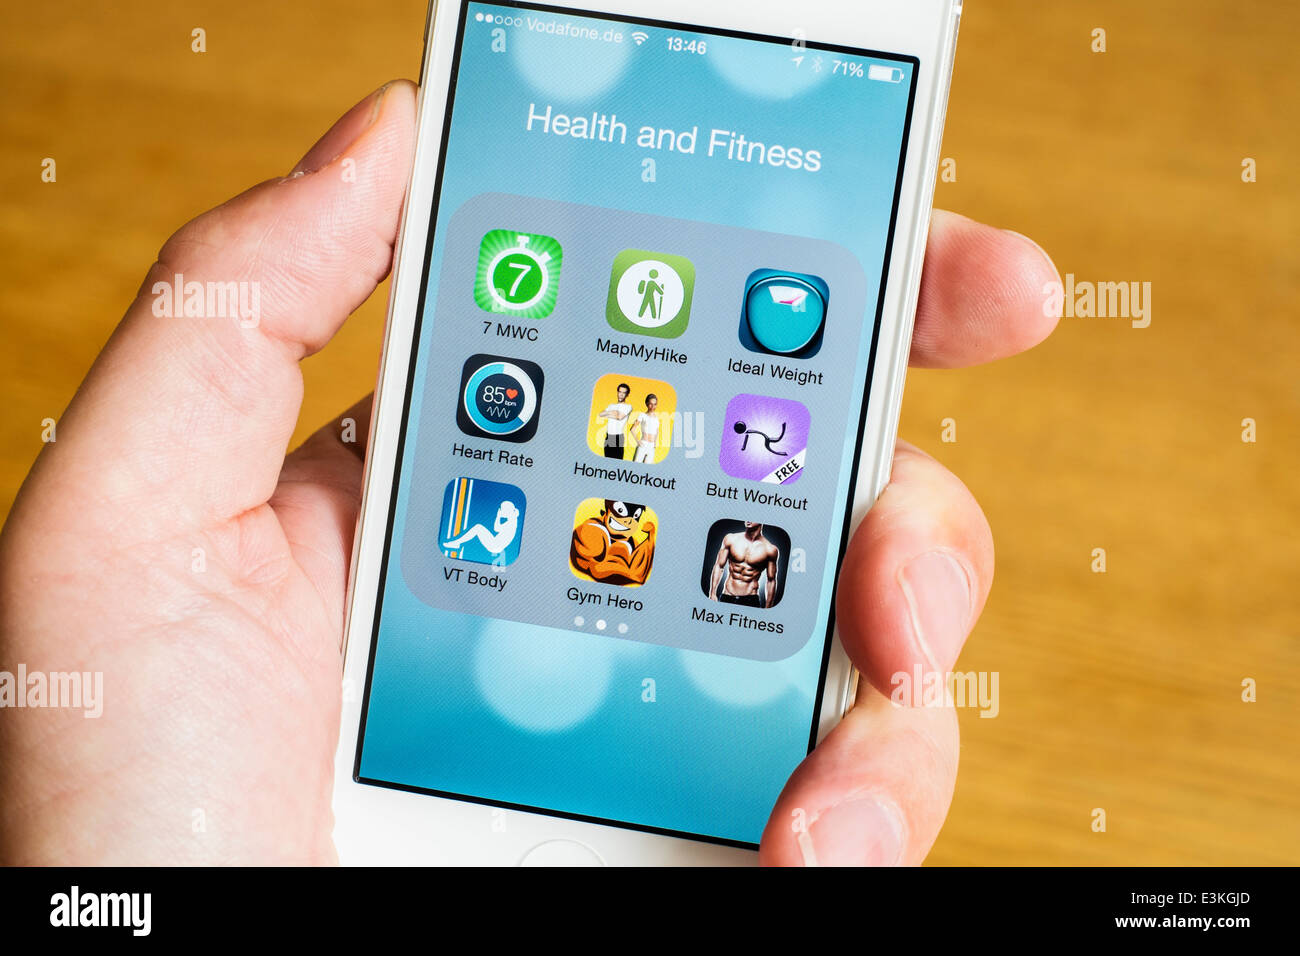 Dettaglio della salute molti ,sport e fitness app su un iPhone smart phone Foto Stock